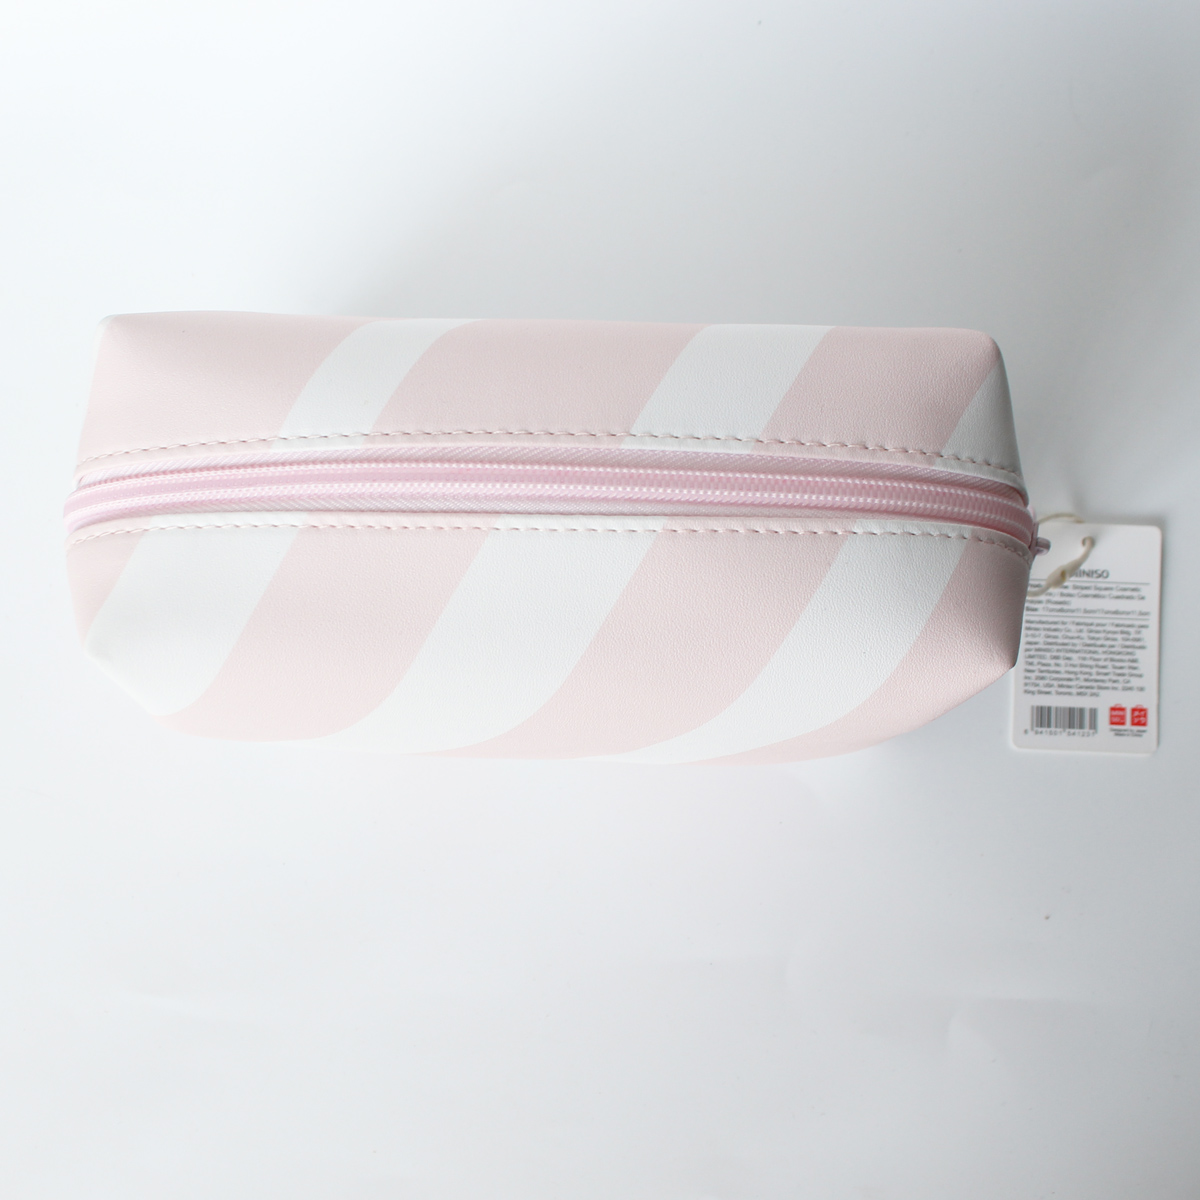 Túi đựng đồ trang điểm mỹ phẩm hình chữ nhật Miniso Striped Square Cosmetic Bag (kẻ trắng hồng), thiết kế Nhật Bản, hàng chính hãng – MNS048